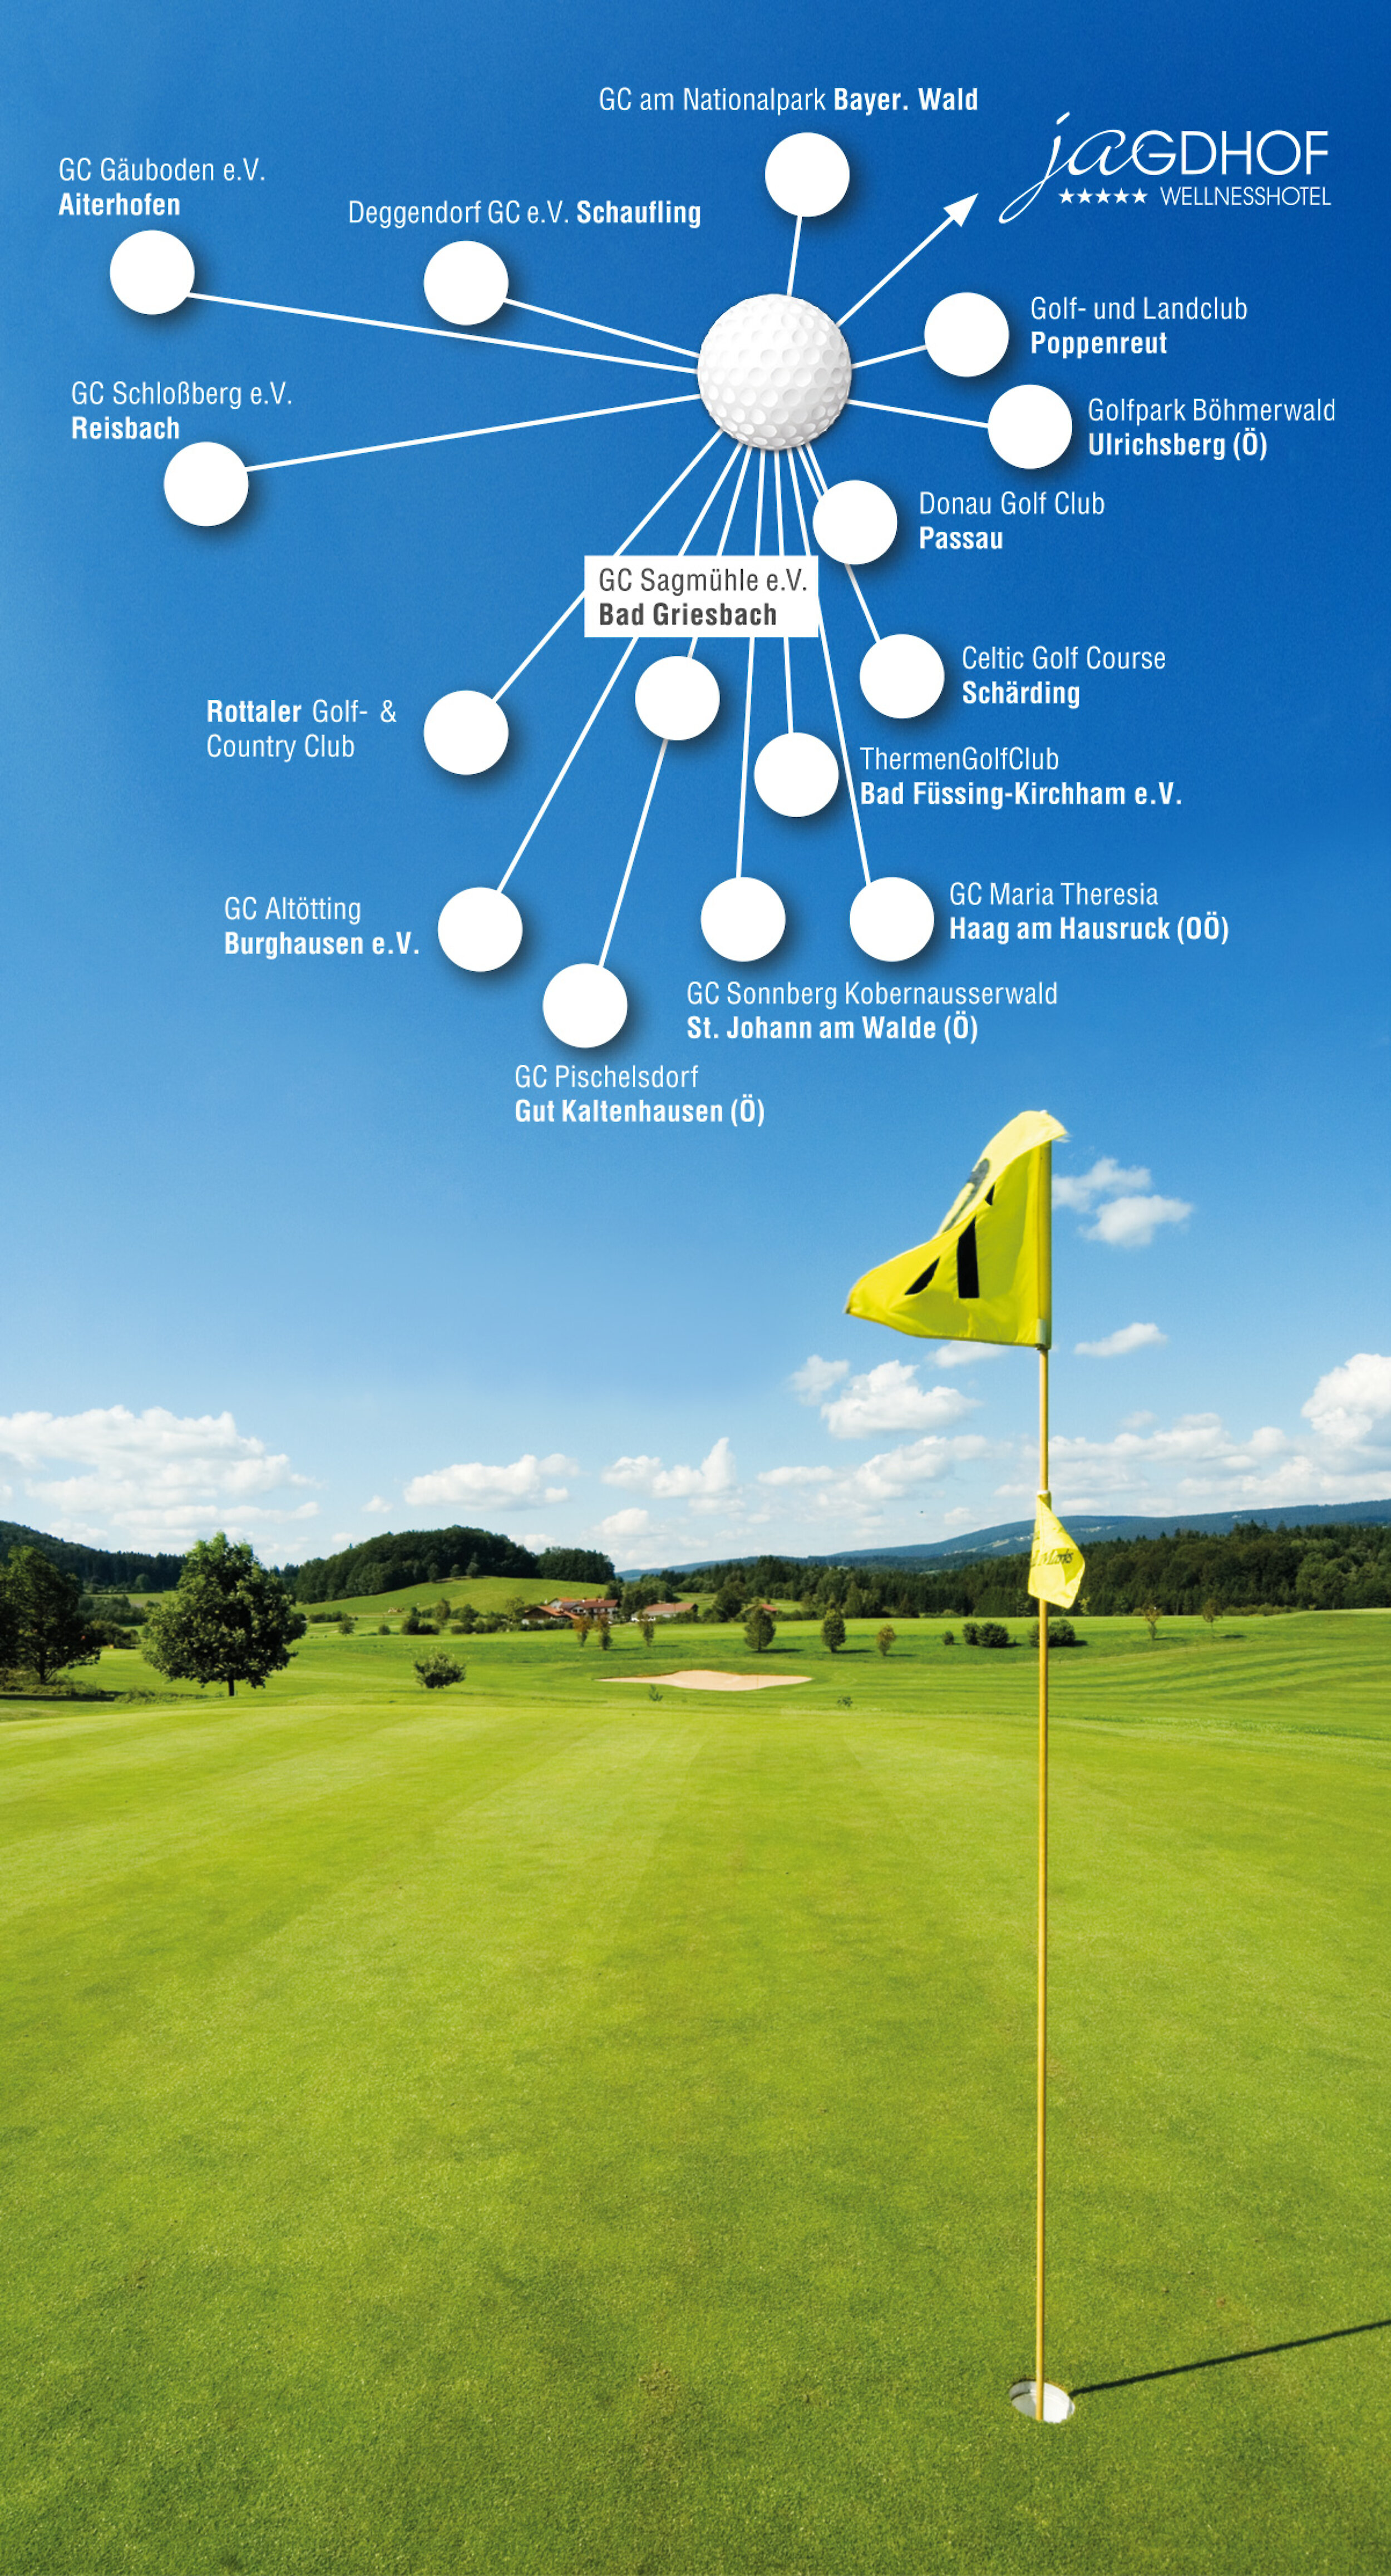 15 Golfclubs in der Nähe des 5-Sterne Hotels im Bayerischen Wald